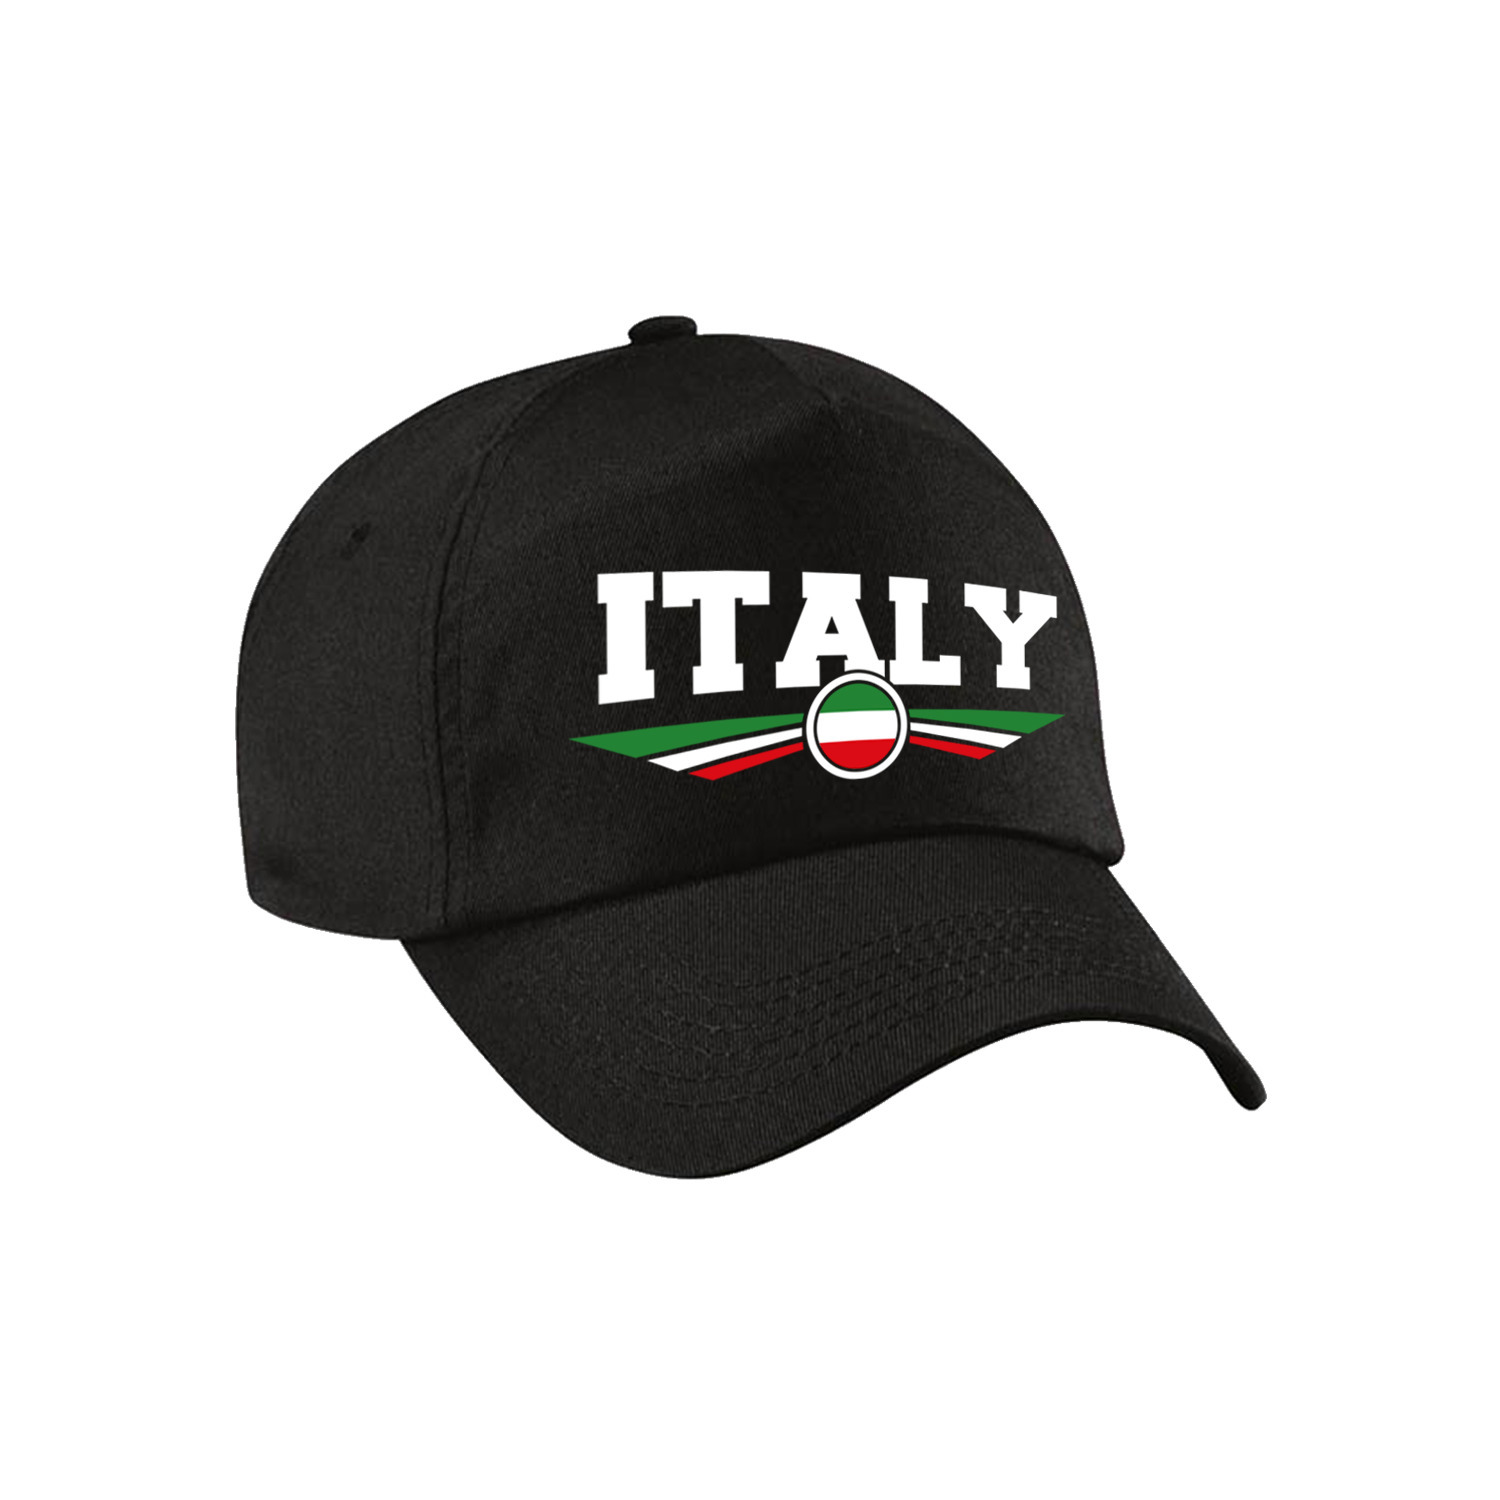 Italie-Italy landen pet-baseball cap zwart volwassenen